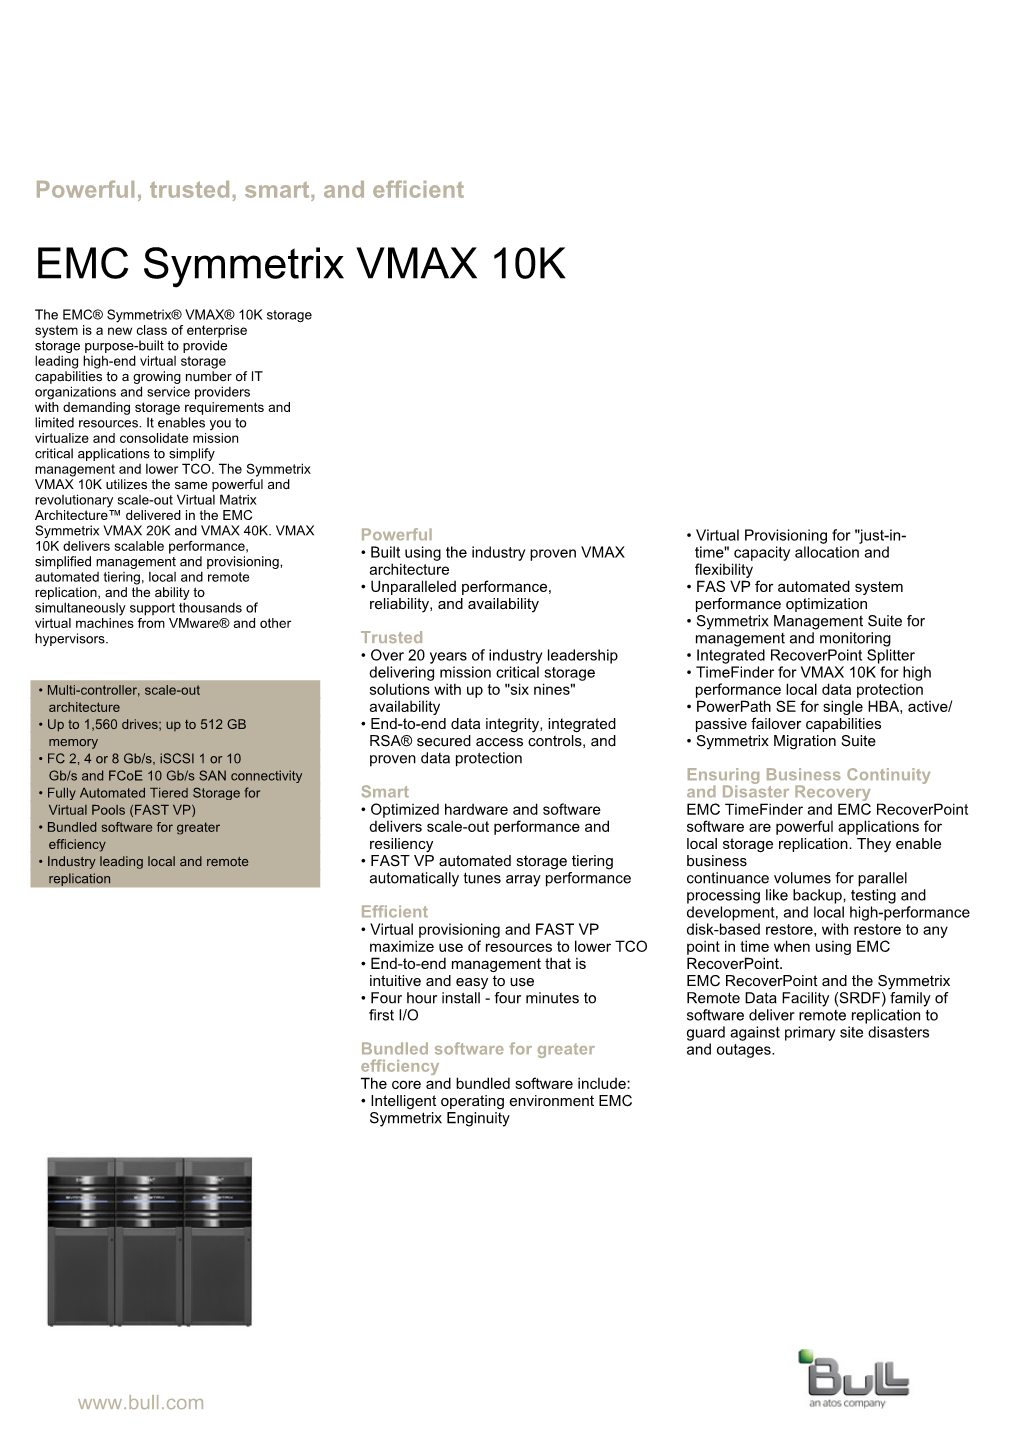 EMC Symmetrix VMAX 10K